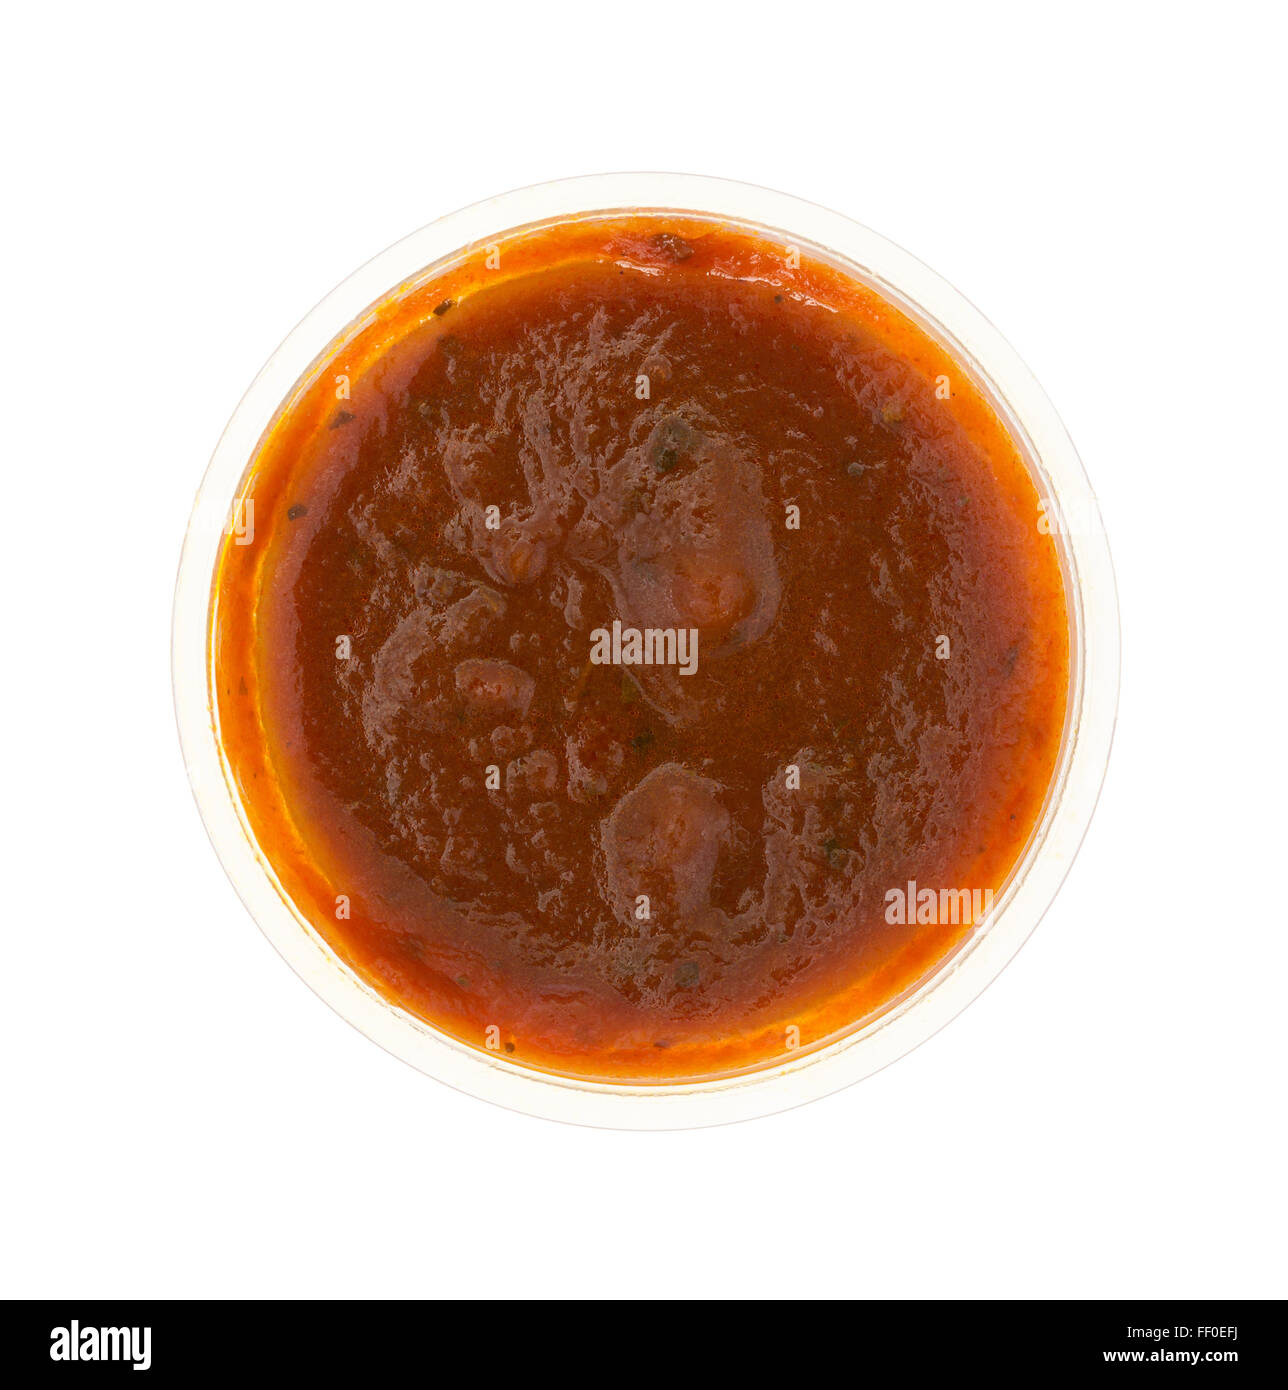 https://c8.alamy.com/comp/FF0EFJ/top-view-of-a-small-portion-of-marinara-sauce-in-a-plastic-container-FF0EFJ.jpg